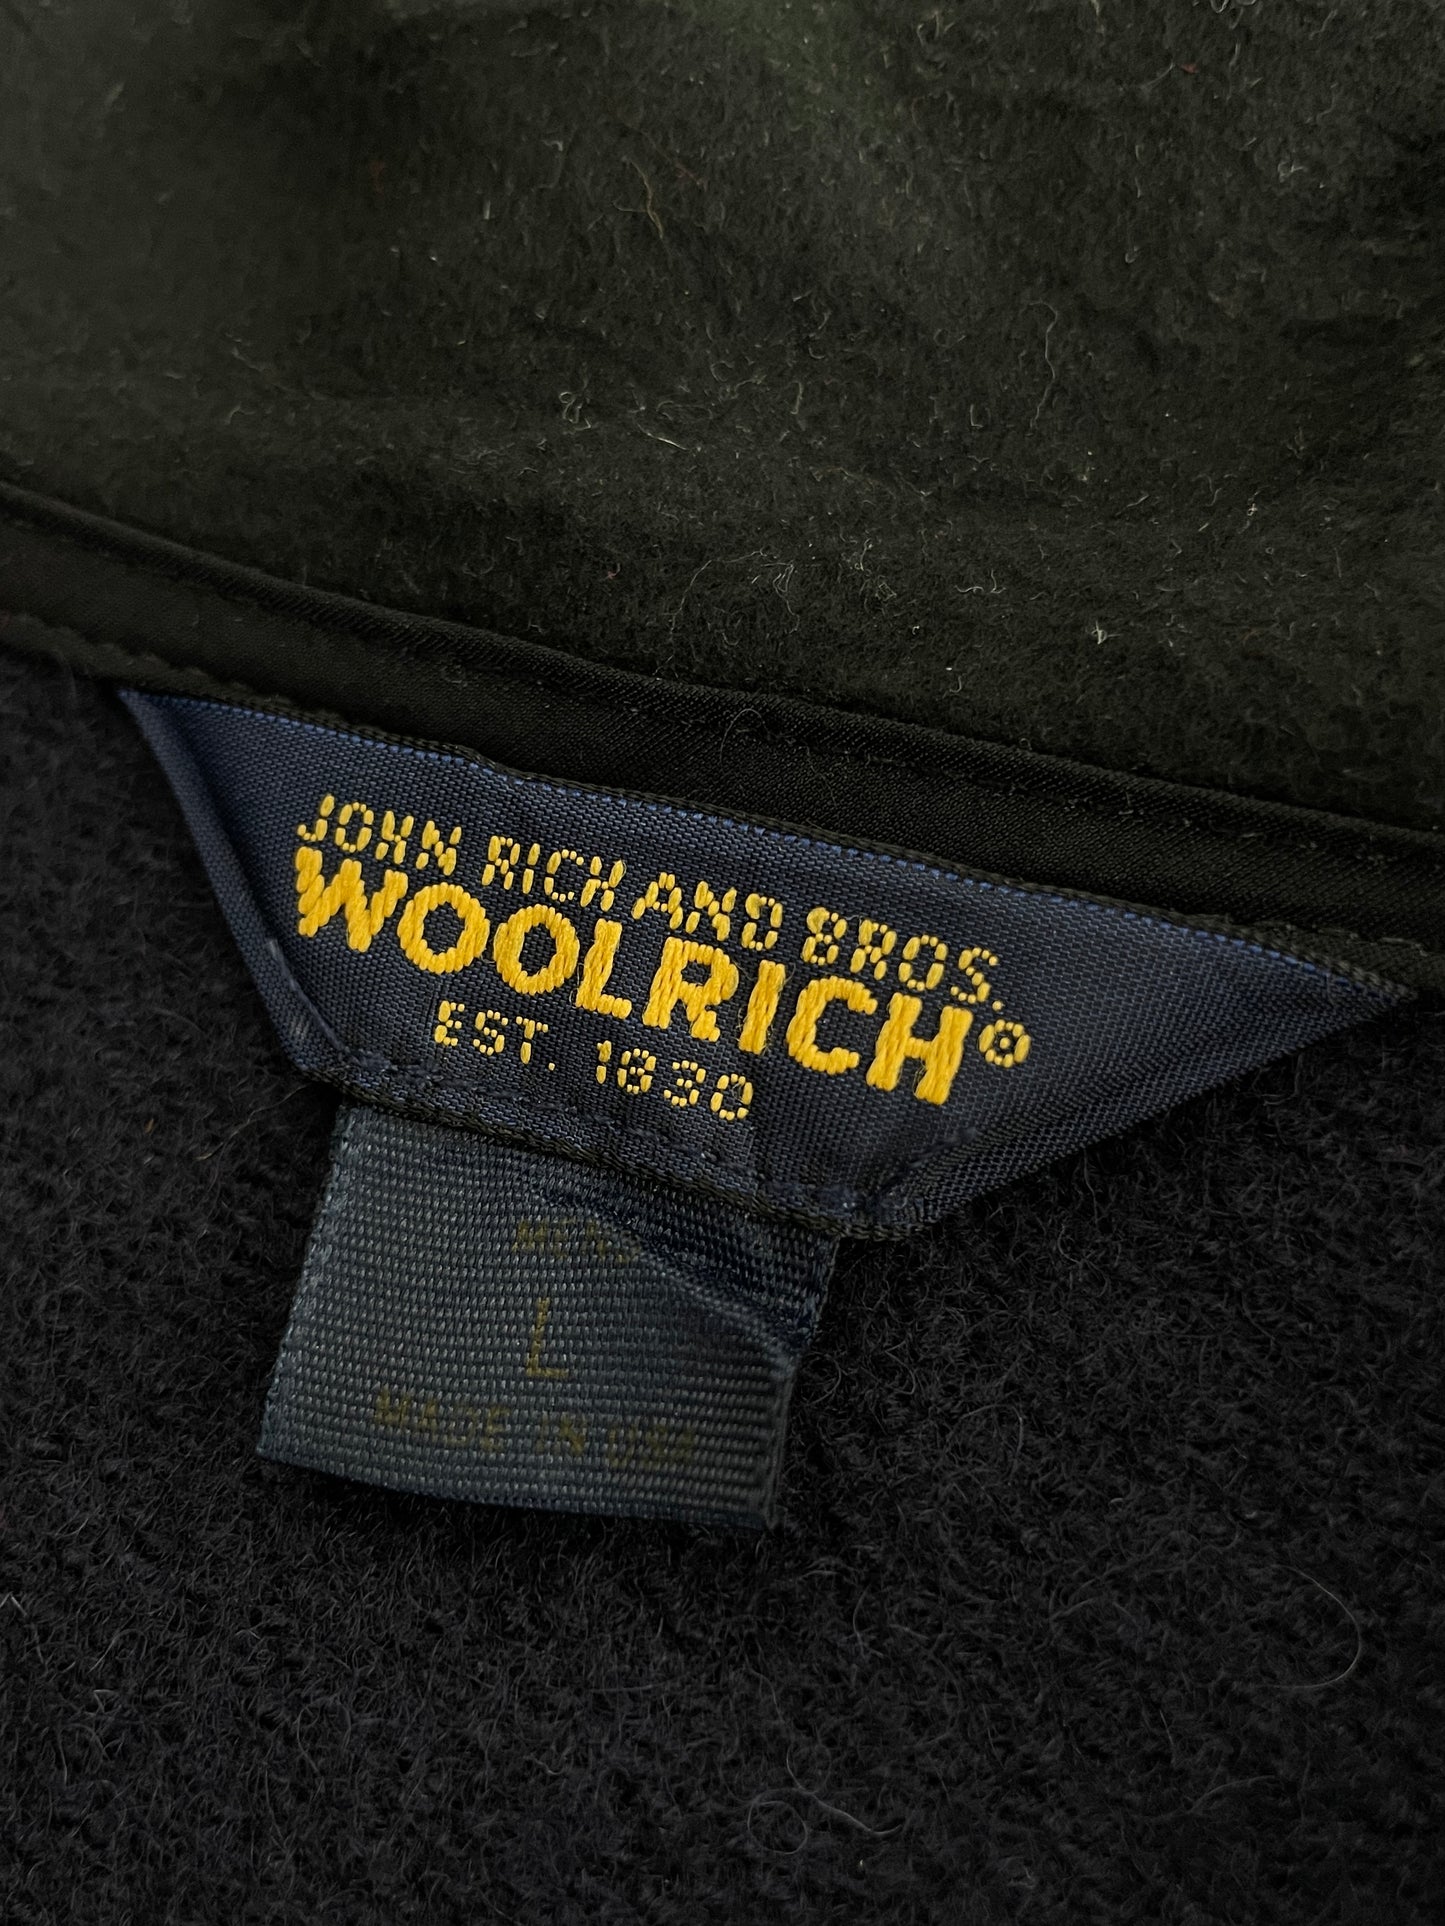 Woolrich Jacket [L]